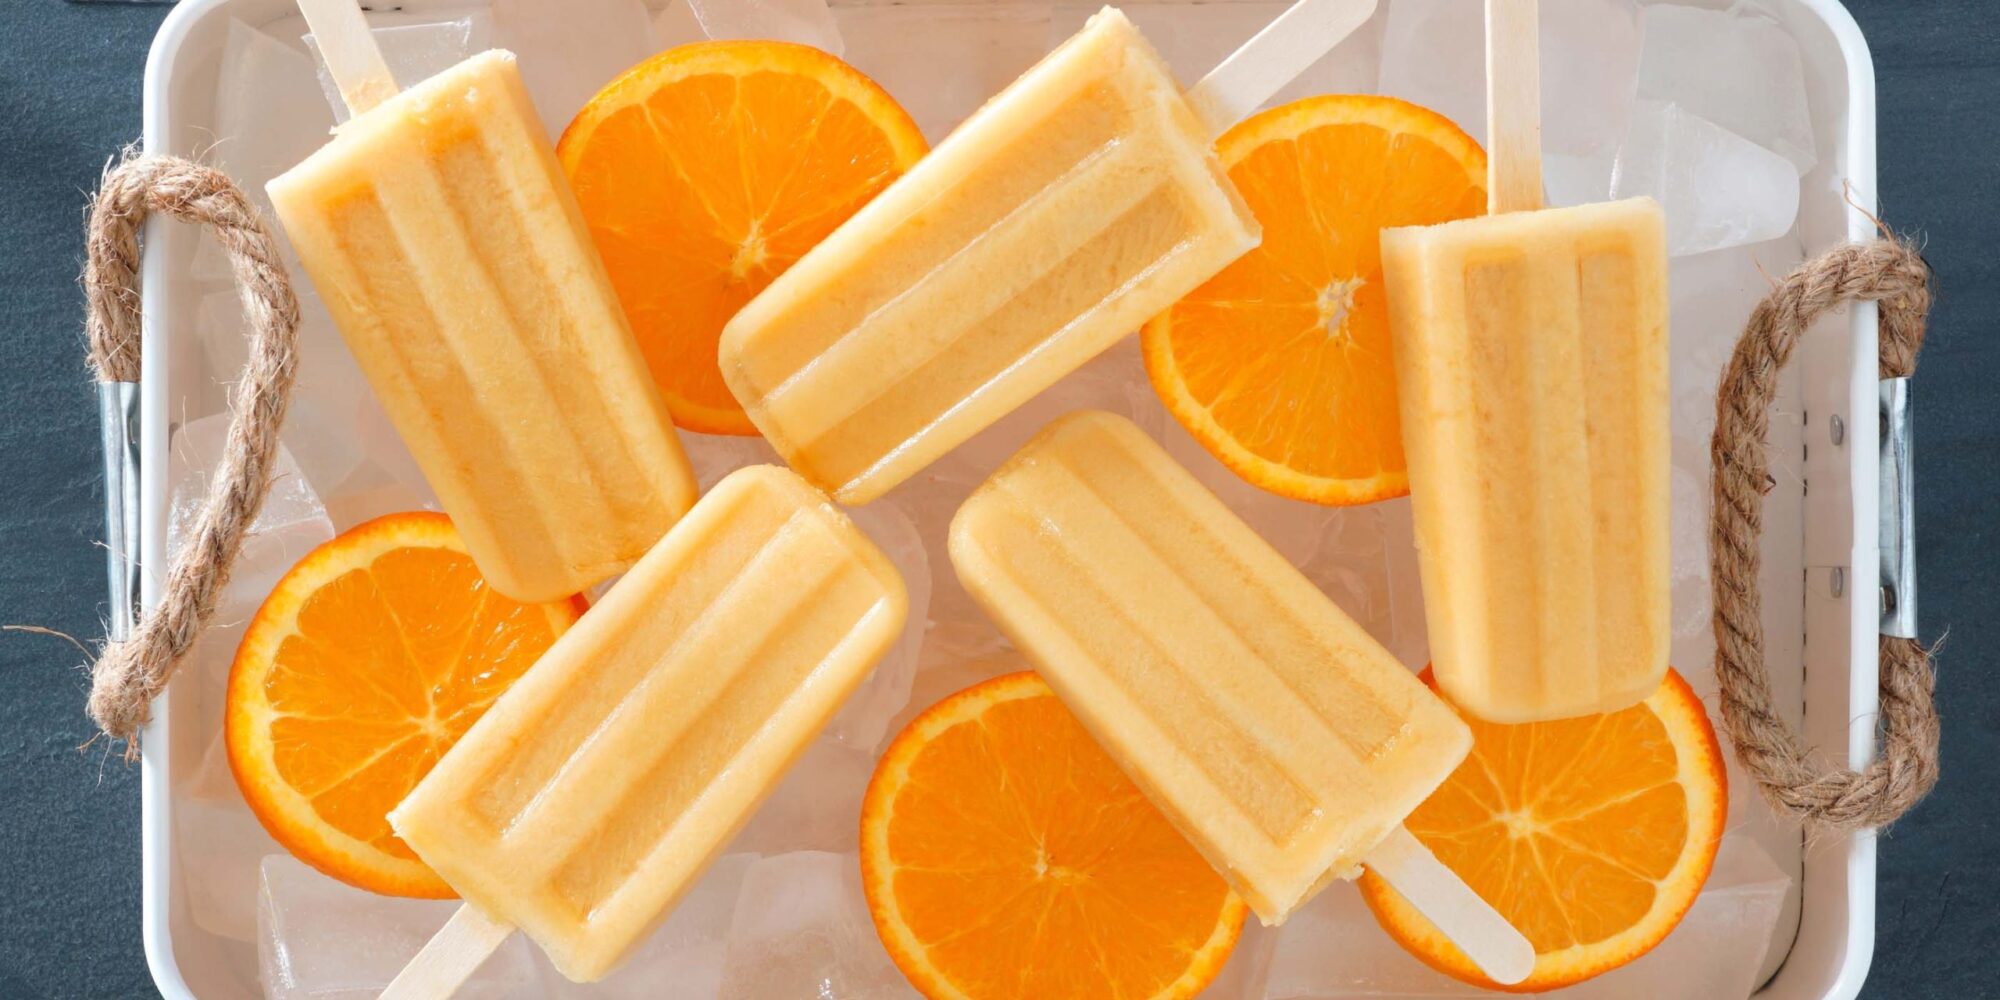 Barres crème Dreamy Orange